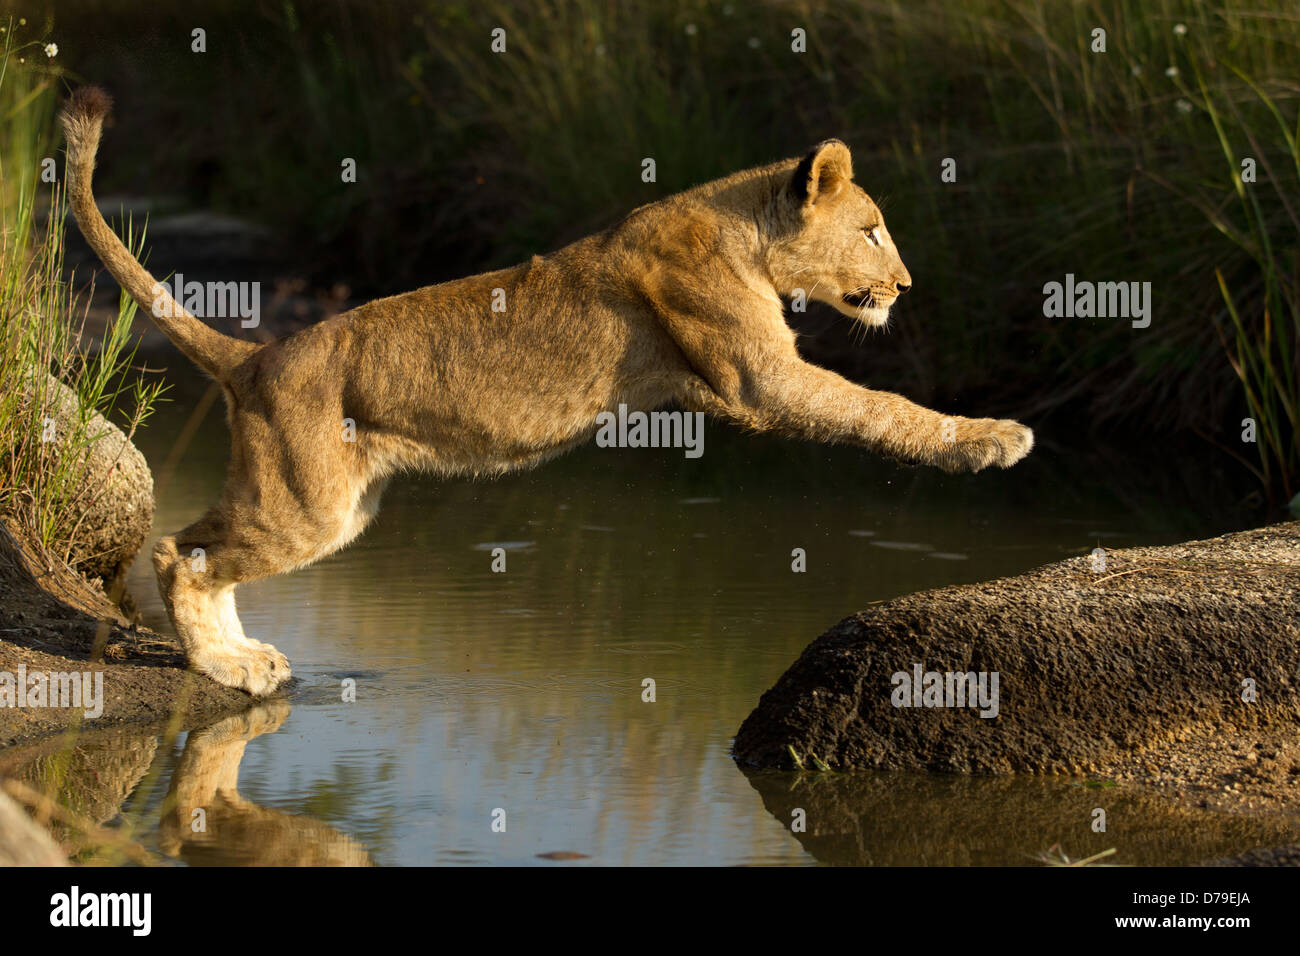 León joven saltando sobre el agua Foto de stock